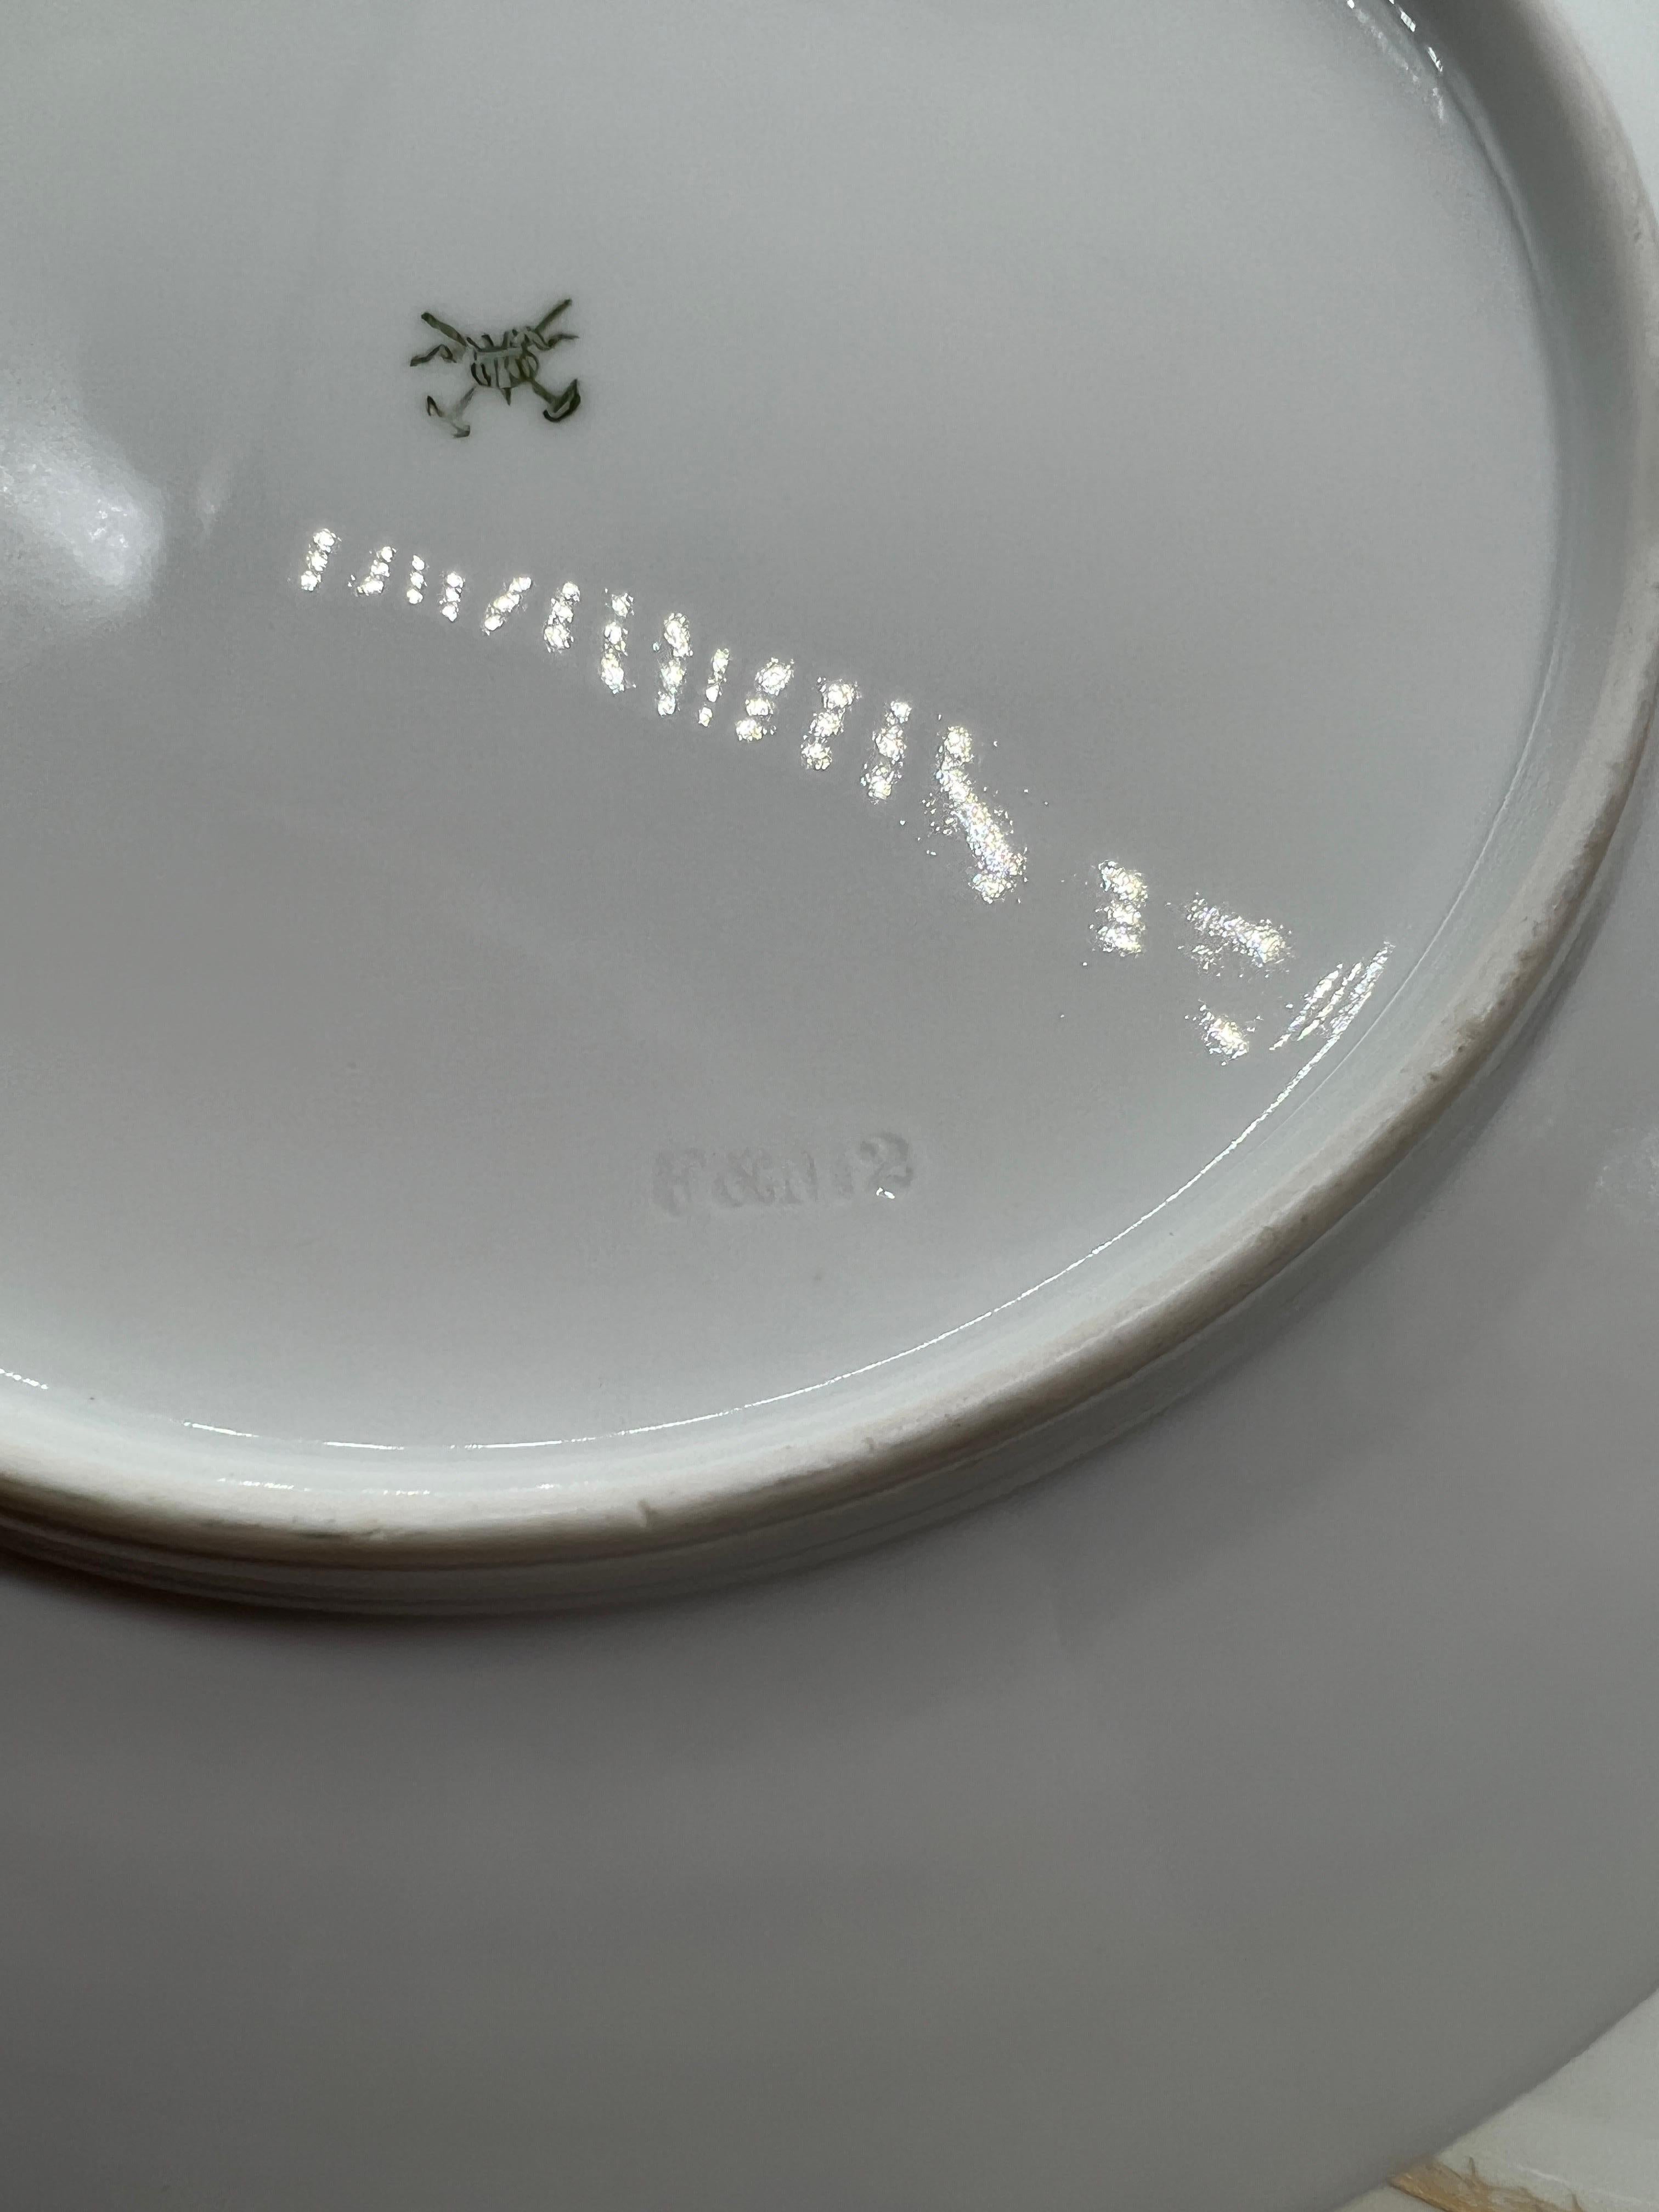 (10) Ten Fischer & Mieg Pirkenhammer Gilt Vine Encrusted Porcelain Dinner Plates For Sale 1